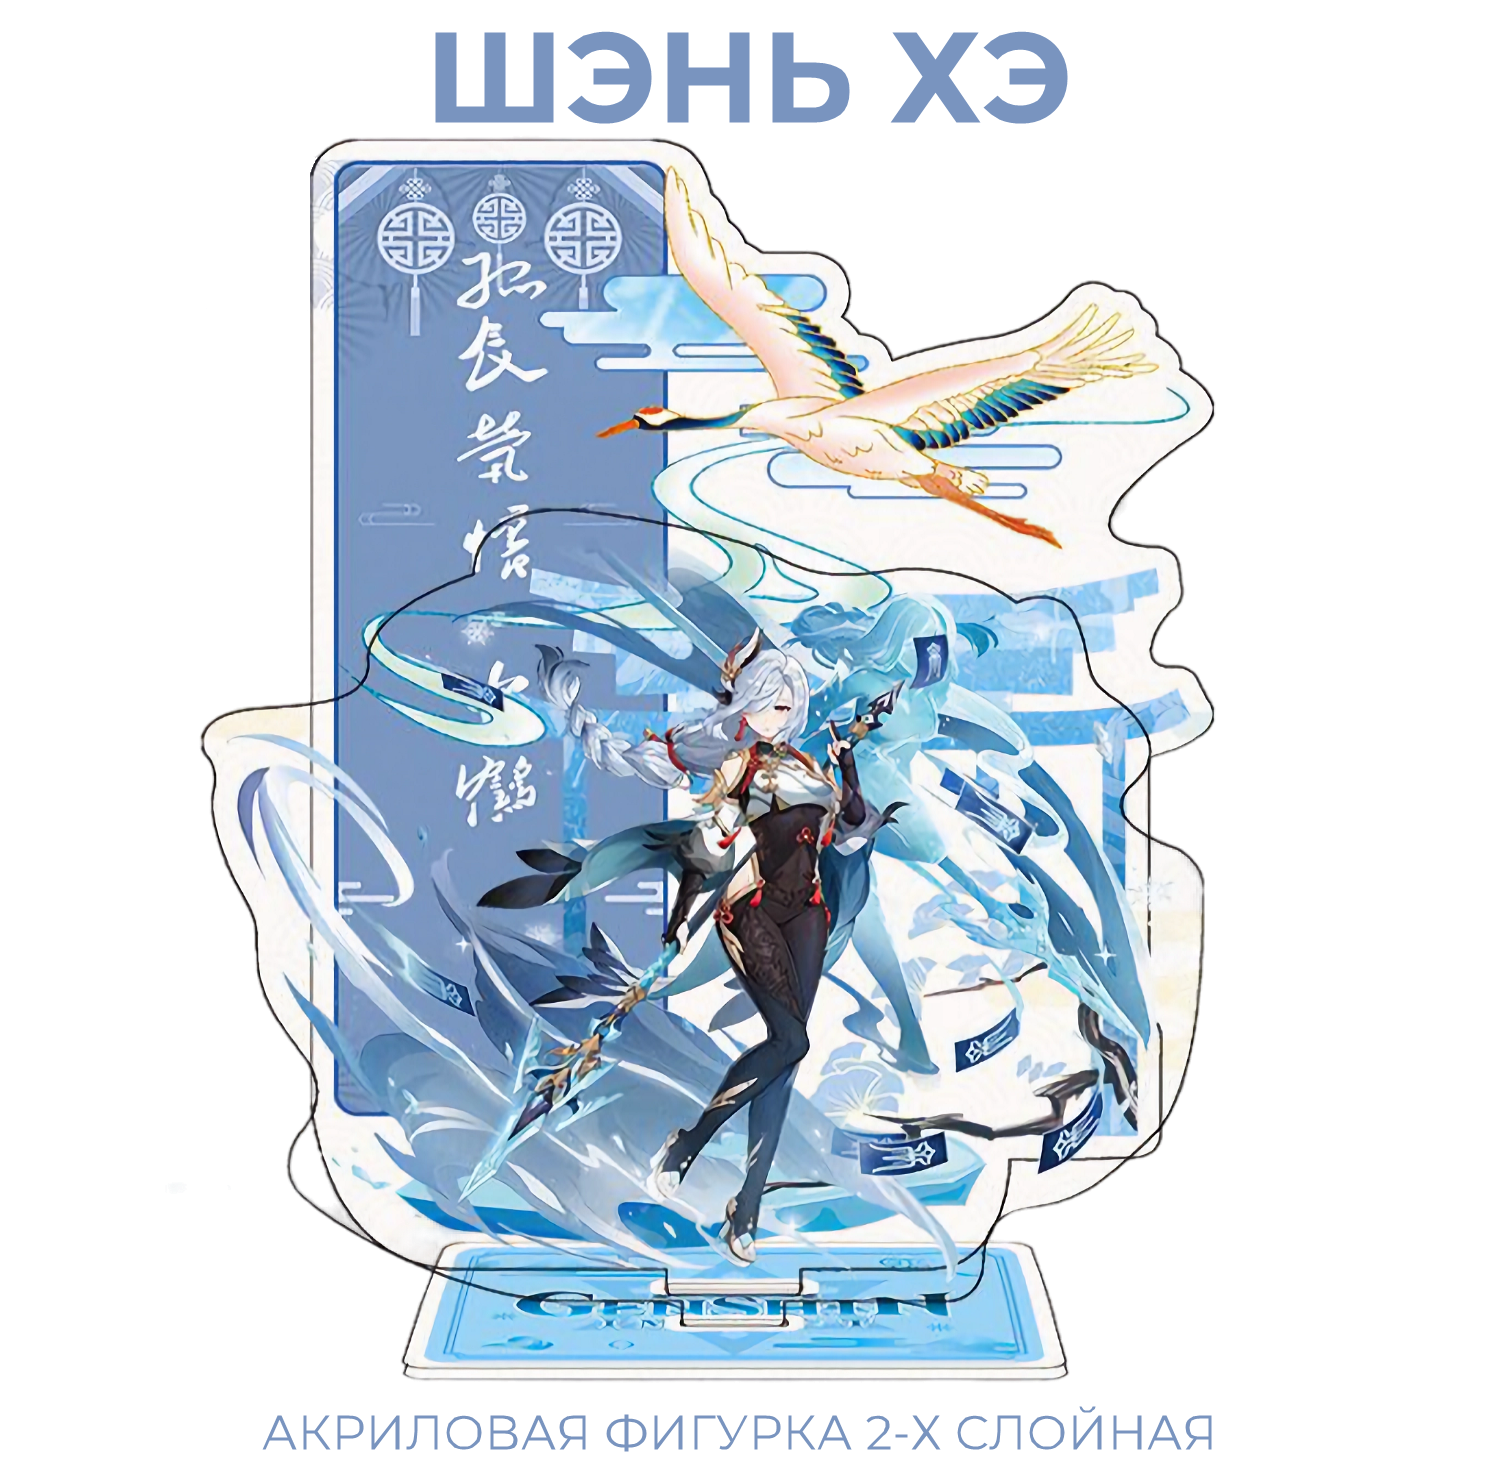 Акриловая фигурка Genshin Impact 2-х слойная Шэнь Хэ 18/15 см